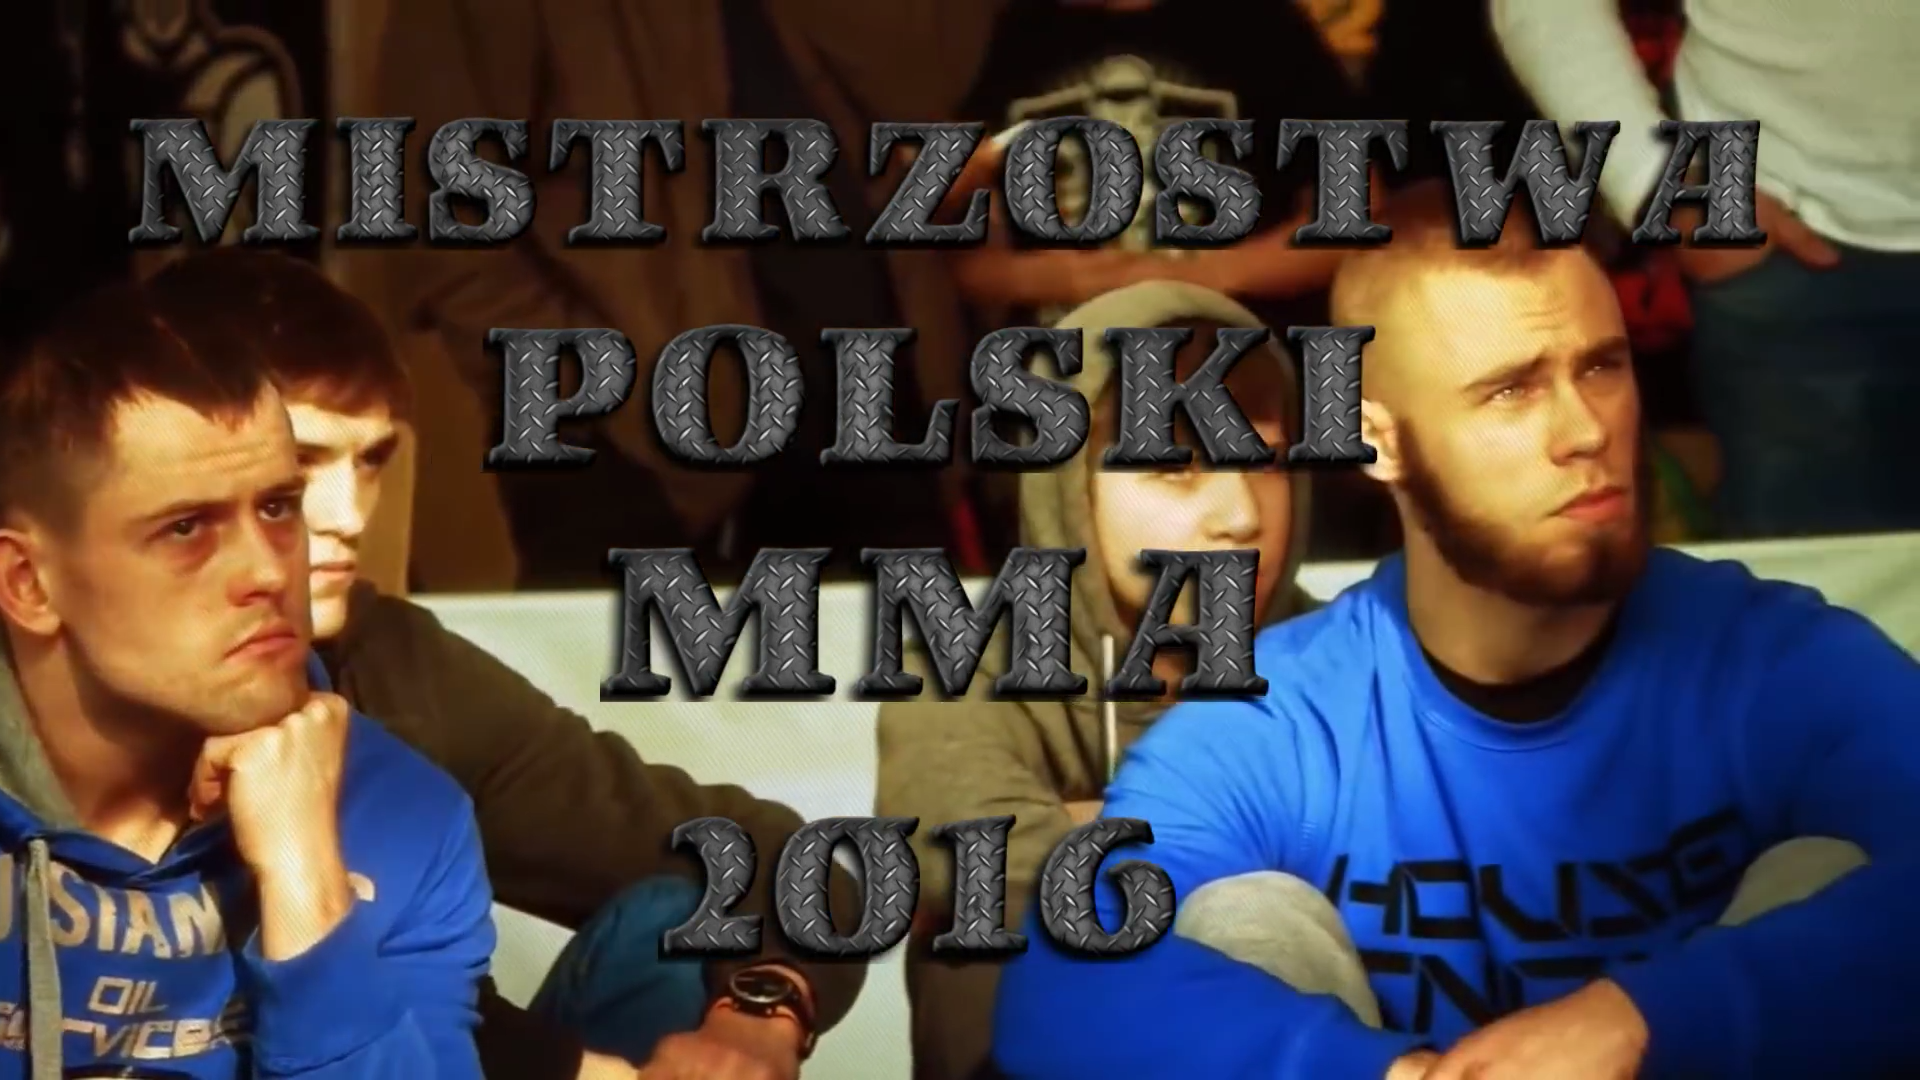 Mistrzostwa Polski MMA 2016 już za dwa tygodnie